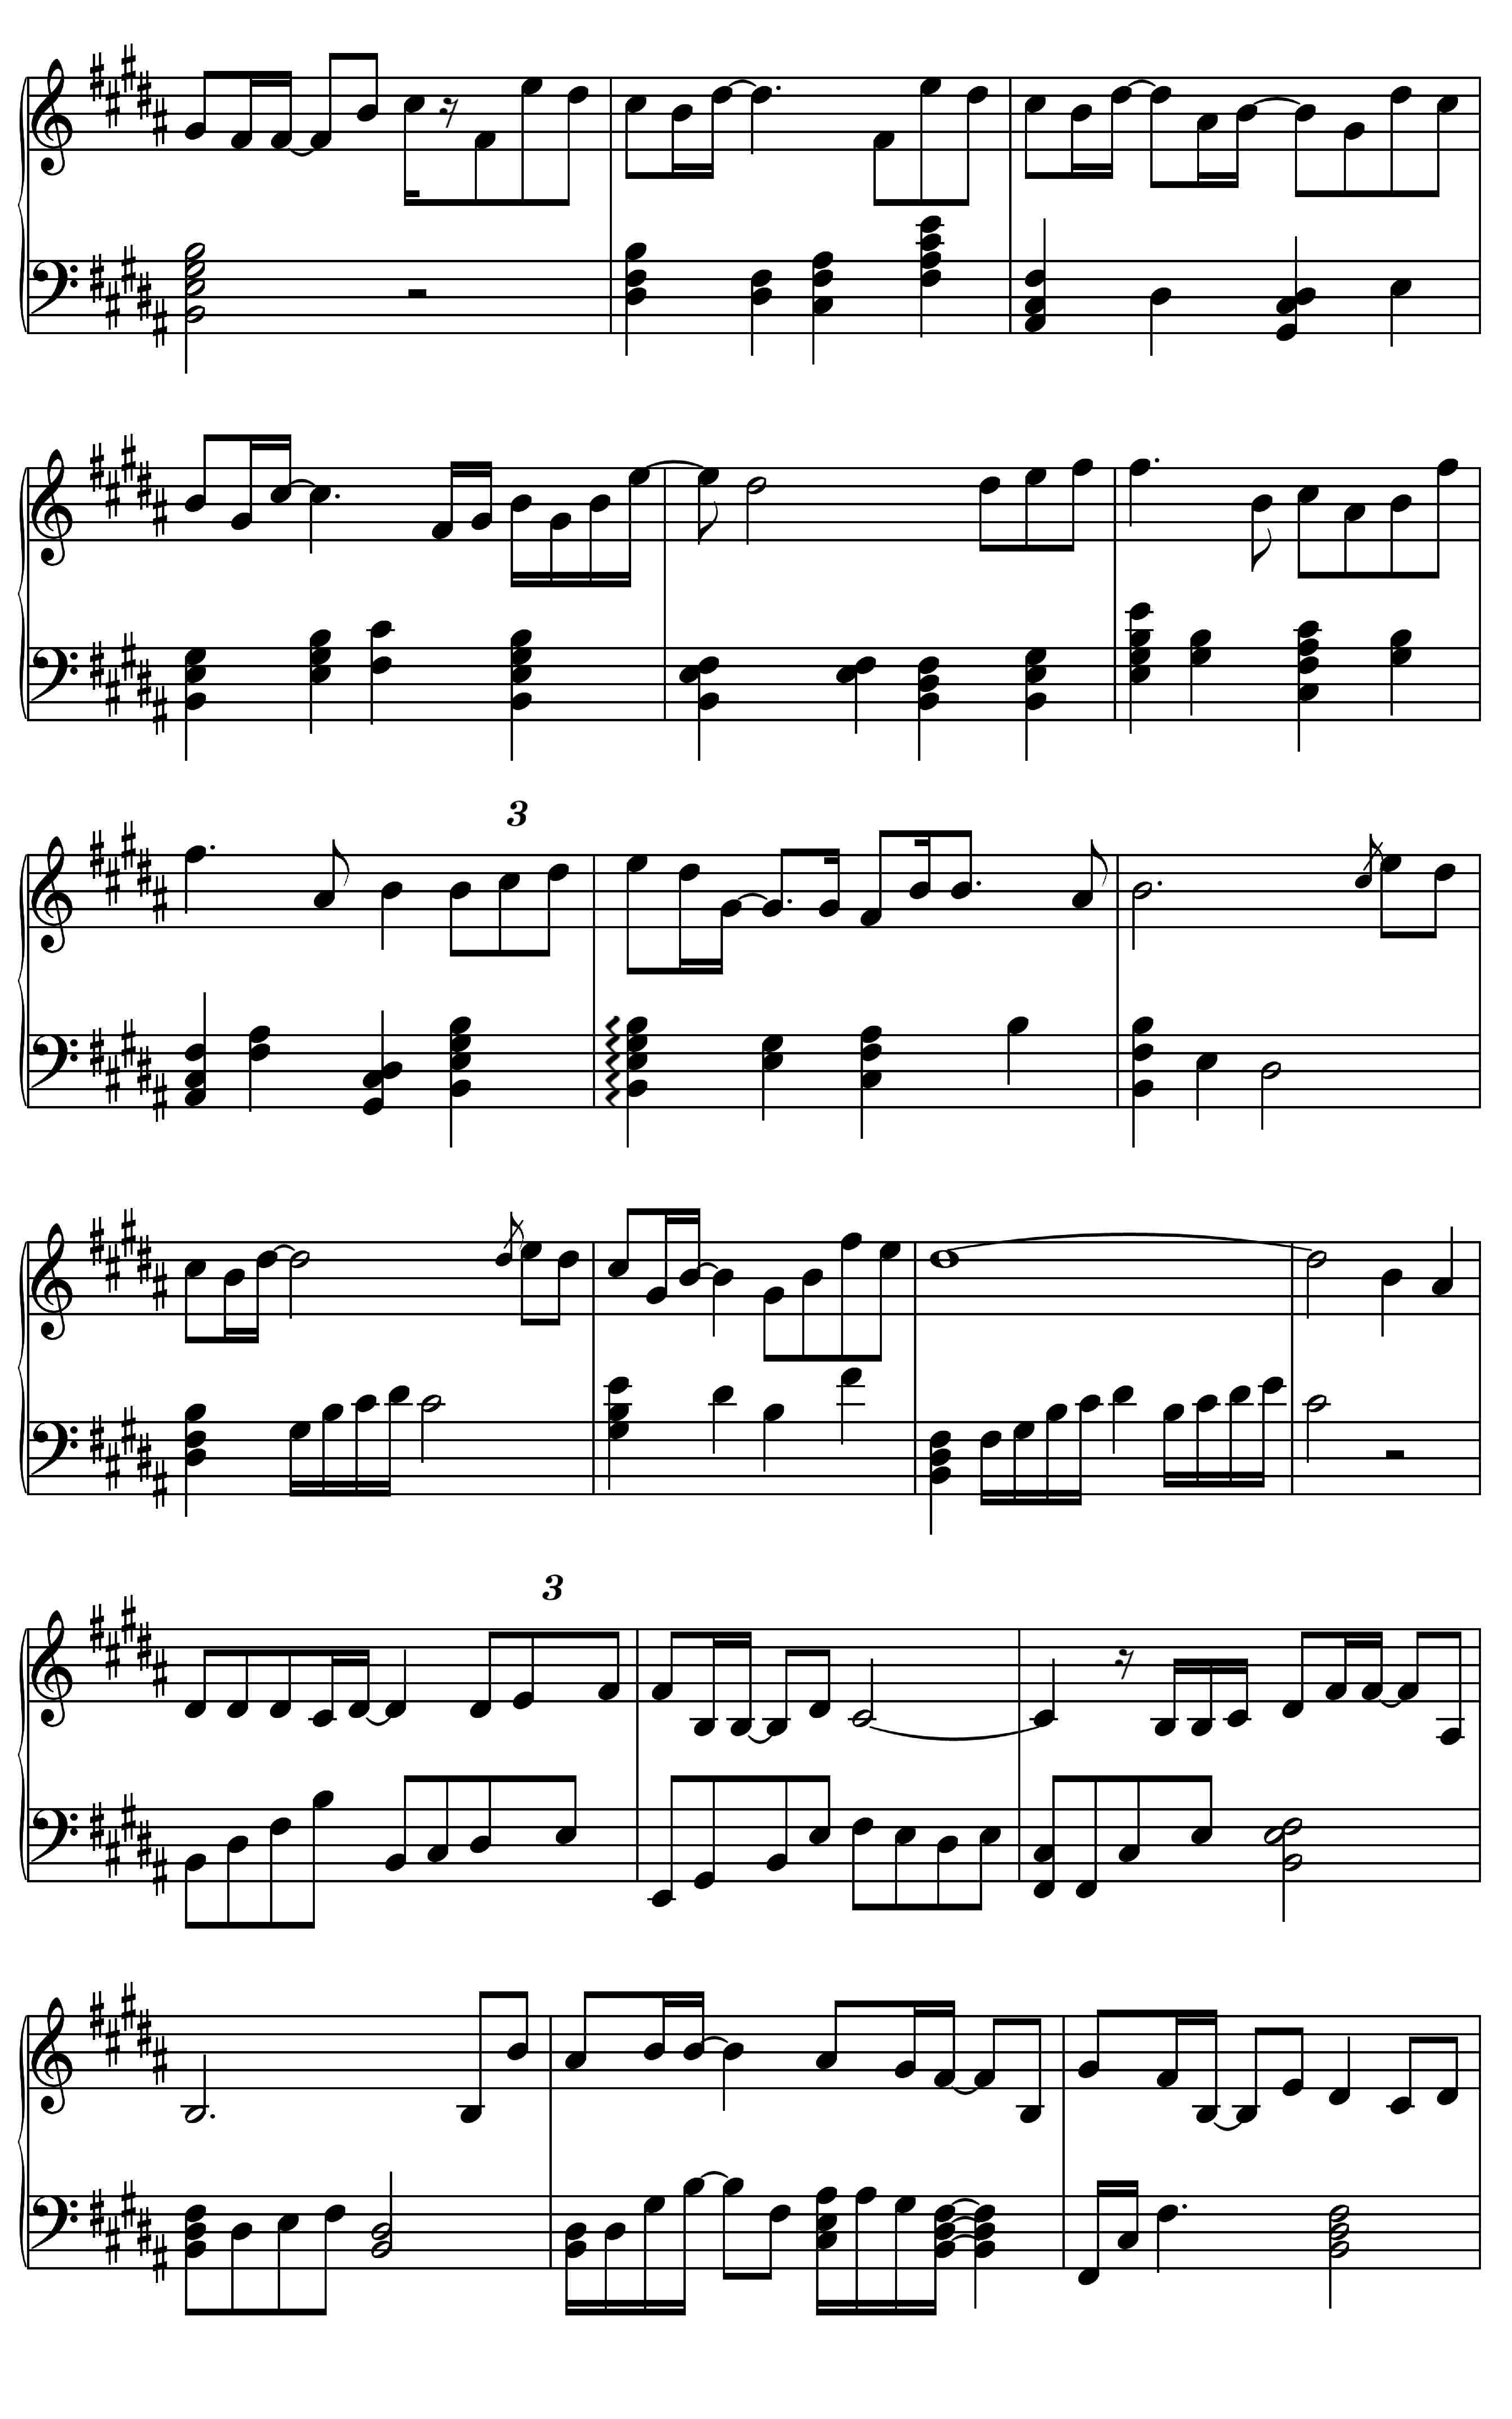 摩天轮的思念-超少年密码插曲五线谱预览5-钢琴谱文件（五线谱、双手简谱、数字谱、Midi、PDF）免费下载